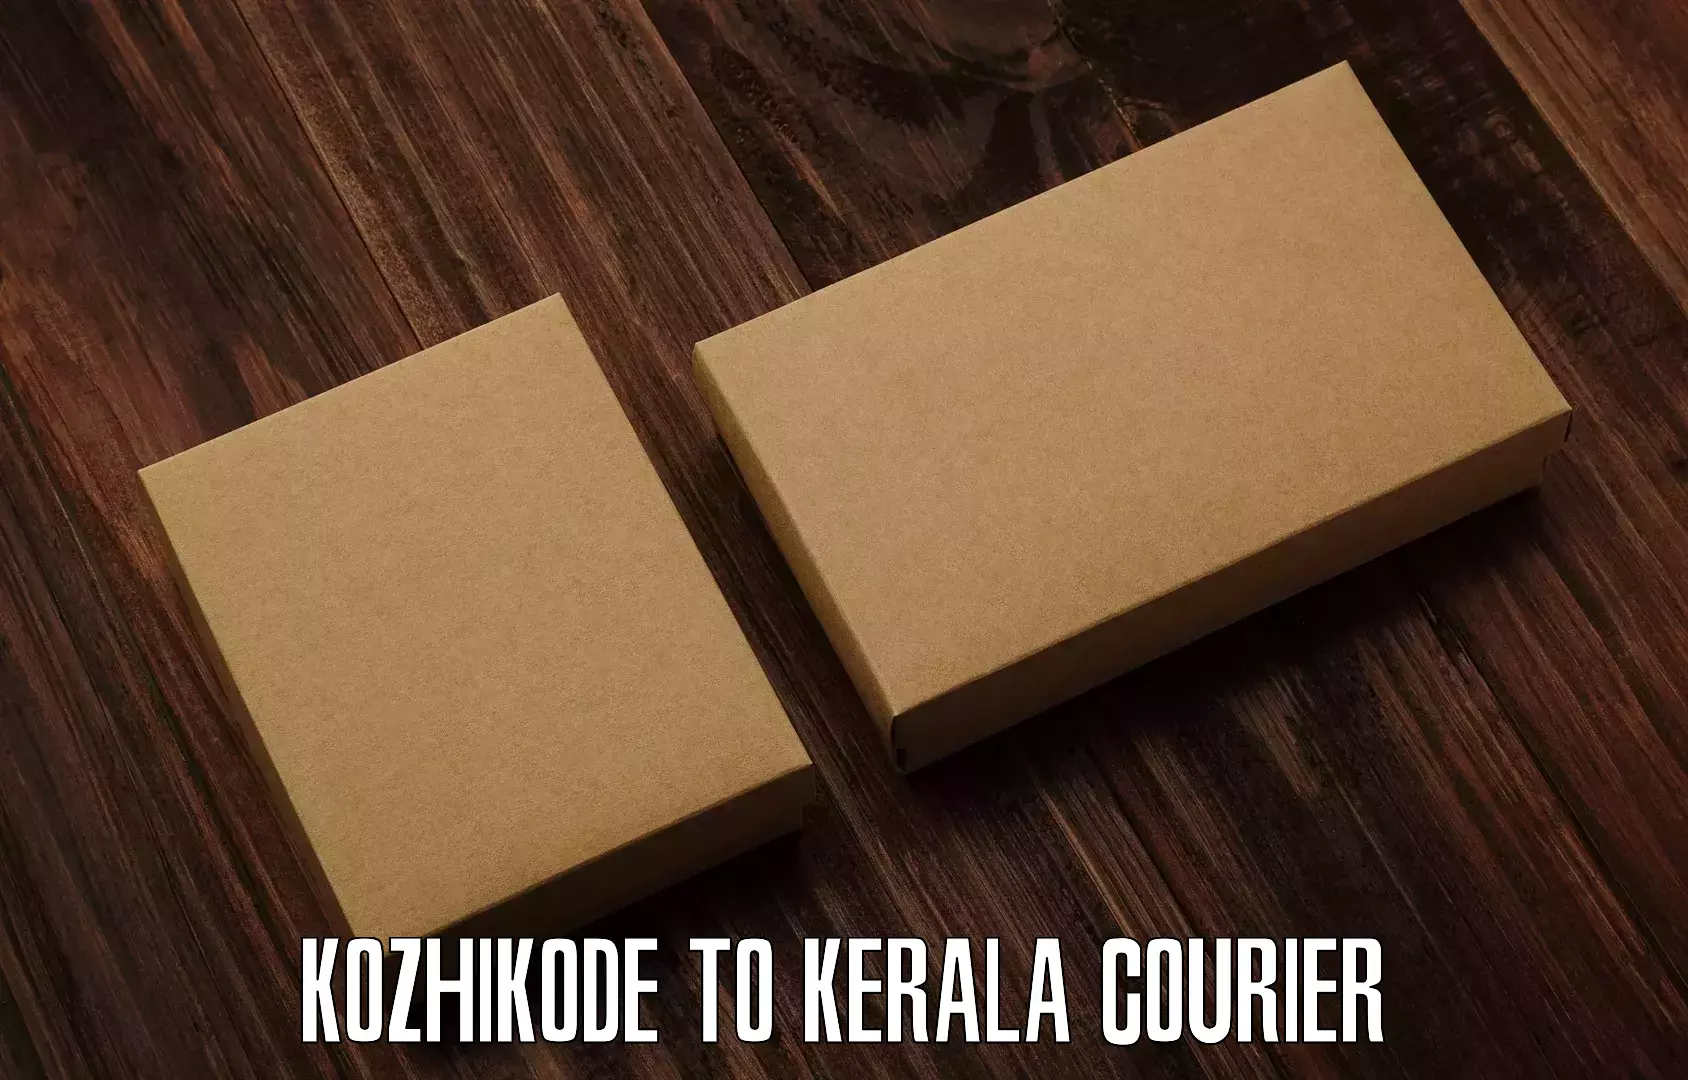 Full-service courier options in Kozhikode to Kothanalloor